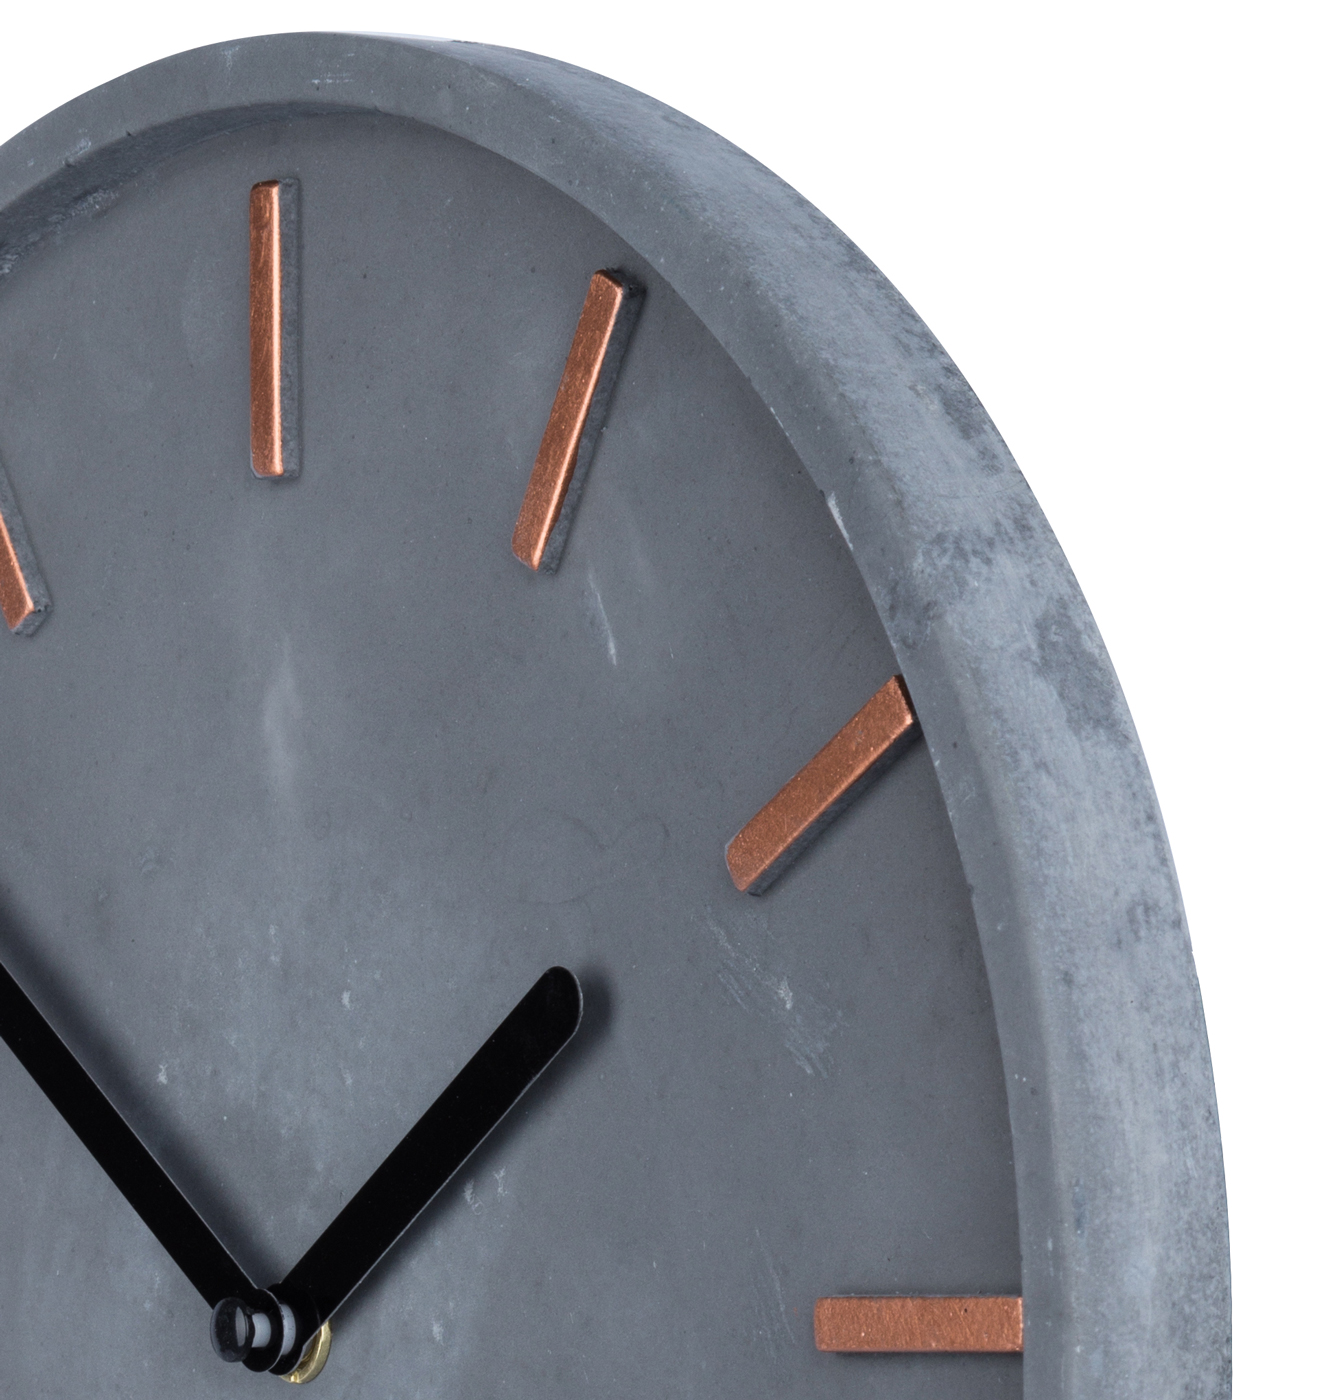 Hochwertige Beton-Uhr Wanduhr ca. 30cm Grau Kupfer Uhrzeit modern Wanddeko